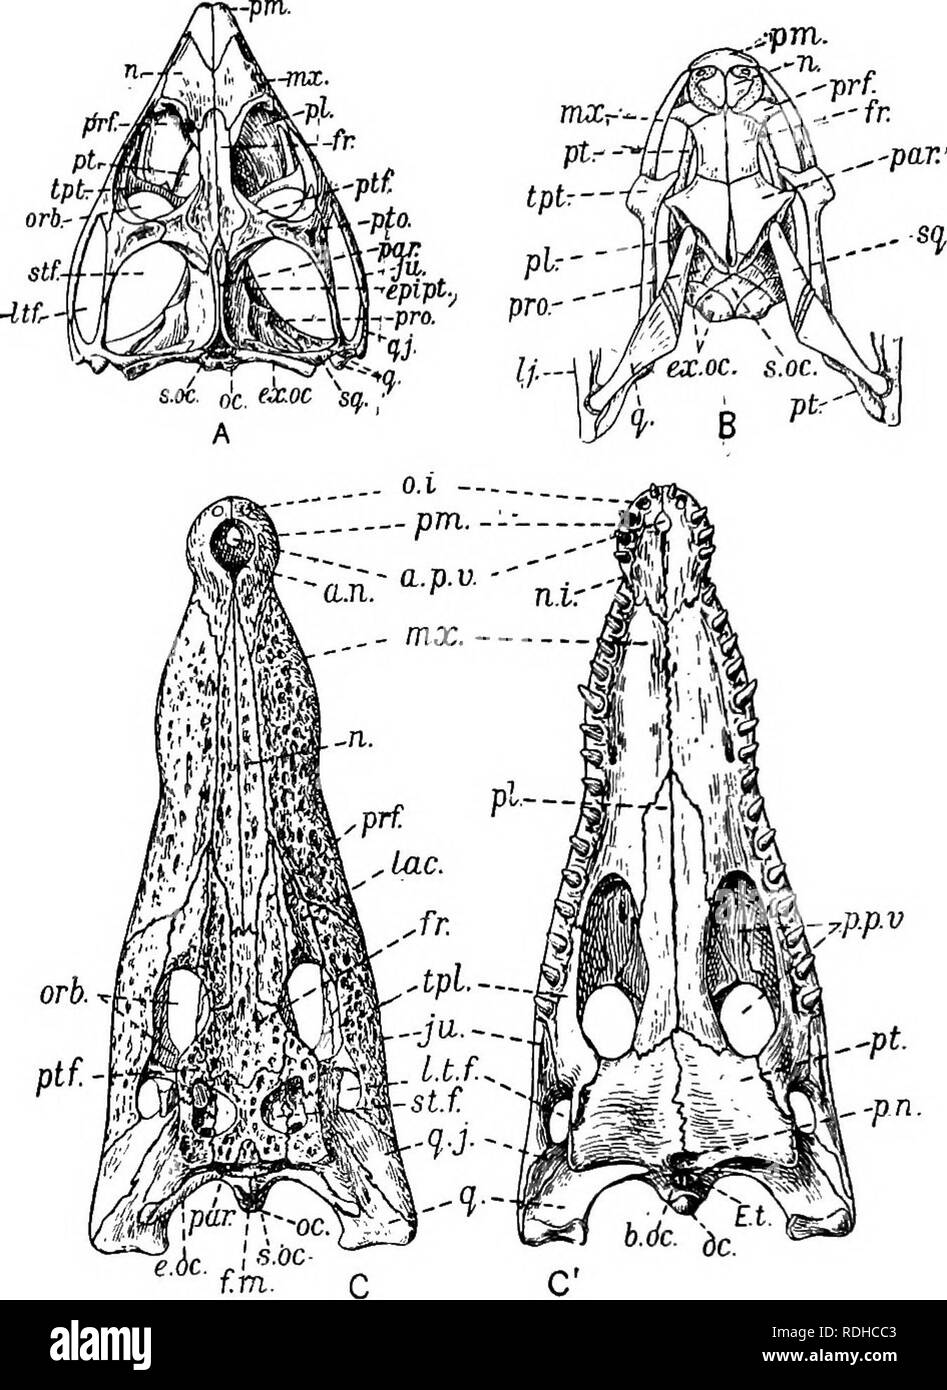 . Un manuel de zoologie élémentaire . Zoologie. Fig. 283.-Les crânes de reptiles. A, vue dorsale du crâne du tuatara (Spkenodon) ; J2, la même vue de la tête de la couleuvre {Tropidonotus natrix avec de petites portions de la mâchoire inférieure ; Cj dorsal et C, vue ventrale du crâne d'un crocodile. l.t.f.i fosse temporale latérale ; lac lacrymal, ; "*jr., maxillaire ; "., nasal ; ".*., dans l'encoche qui correspond à la quatrième dent de la mâchoire inférieure ; 0.1., ouverture dans laquelle s'inscrit la première dent de la mâchoire inférieure ; o.c.t Condyle occipital ; ord., l'orbite ;/."., pos- nares e résultats t',P-p.v,t vacuité palatine postérieure Banque D'Images